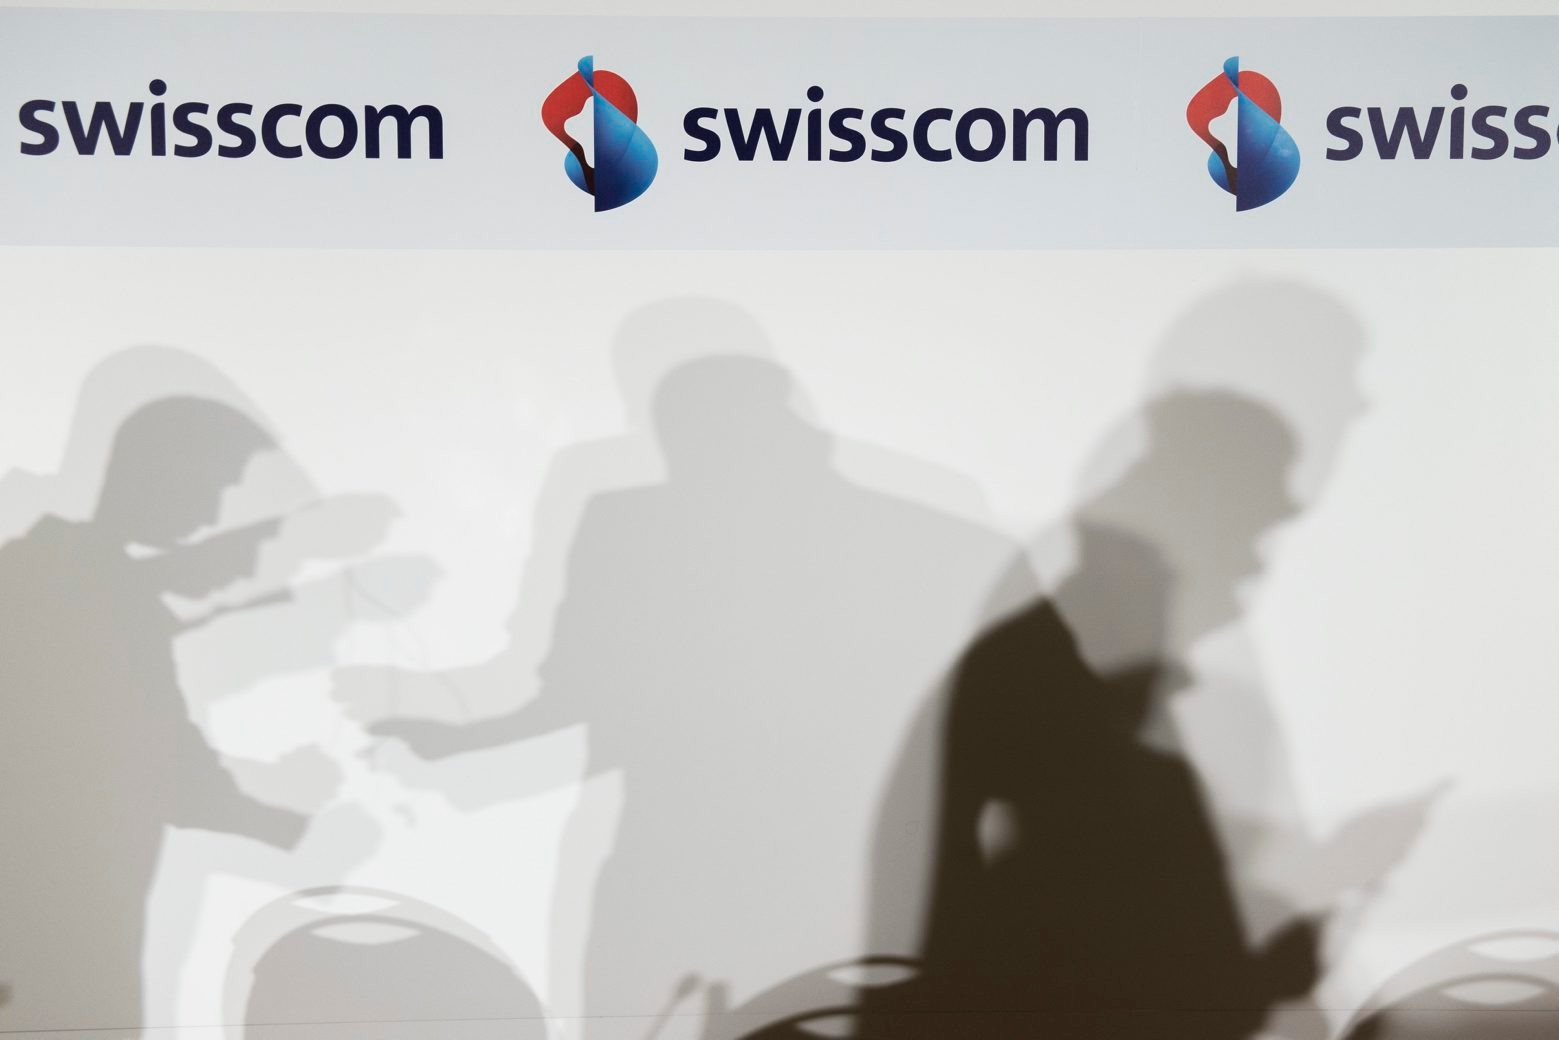 ARCHIV - ZUM GEWINNKNICK BEIM GROESSTEN SCHWEIZER TELEKOMKONZERN SWISSCOM STELLEN WIR IHNEN FOLGENDES ARCHIVBILD ZUR VERFUEGUNG. - Die Schatten von Journalisten bewegen sich an der Bilanzmedienkonferenz der Swisscom am Donnerstag, 5. Februar 2015, in Zuerich. (KEYSTONE/Ennio Leanza) SCHWEIZ SWISSCOM